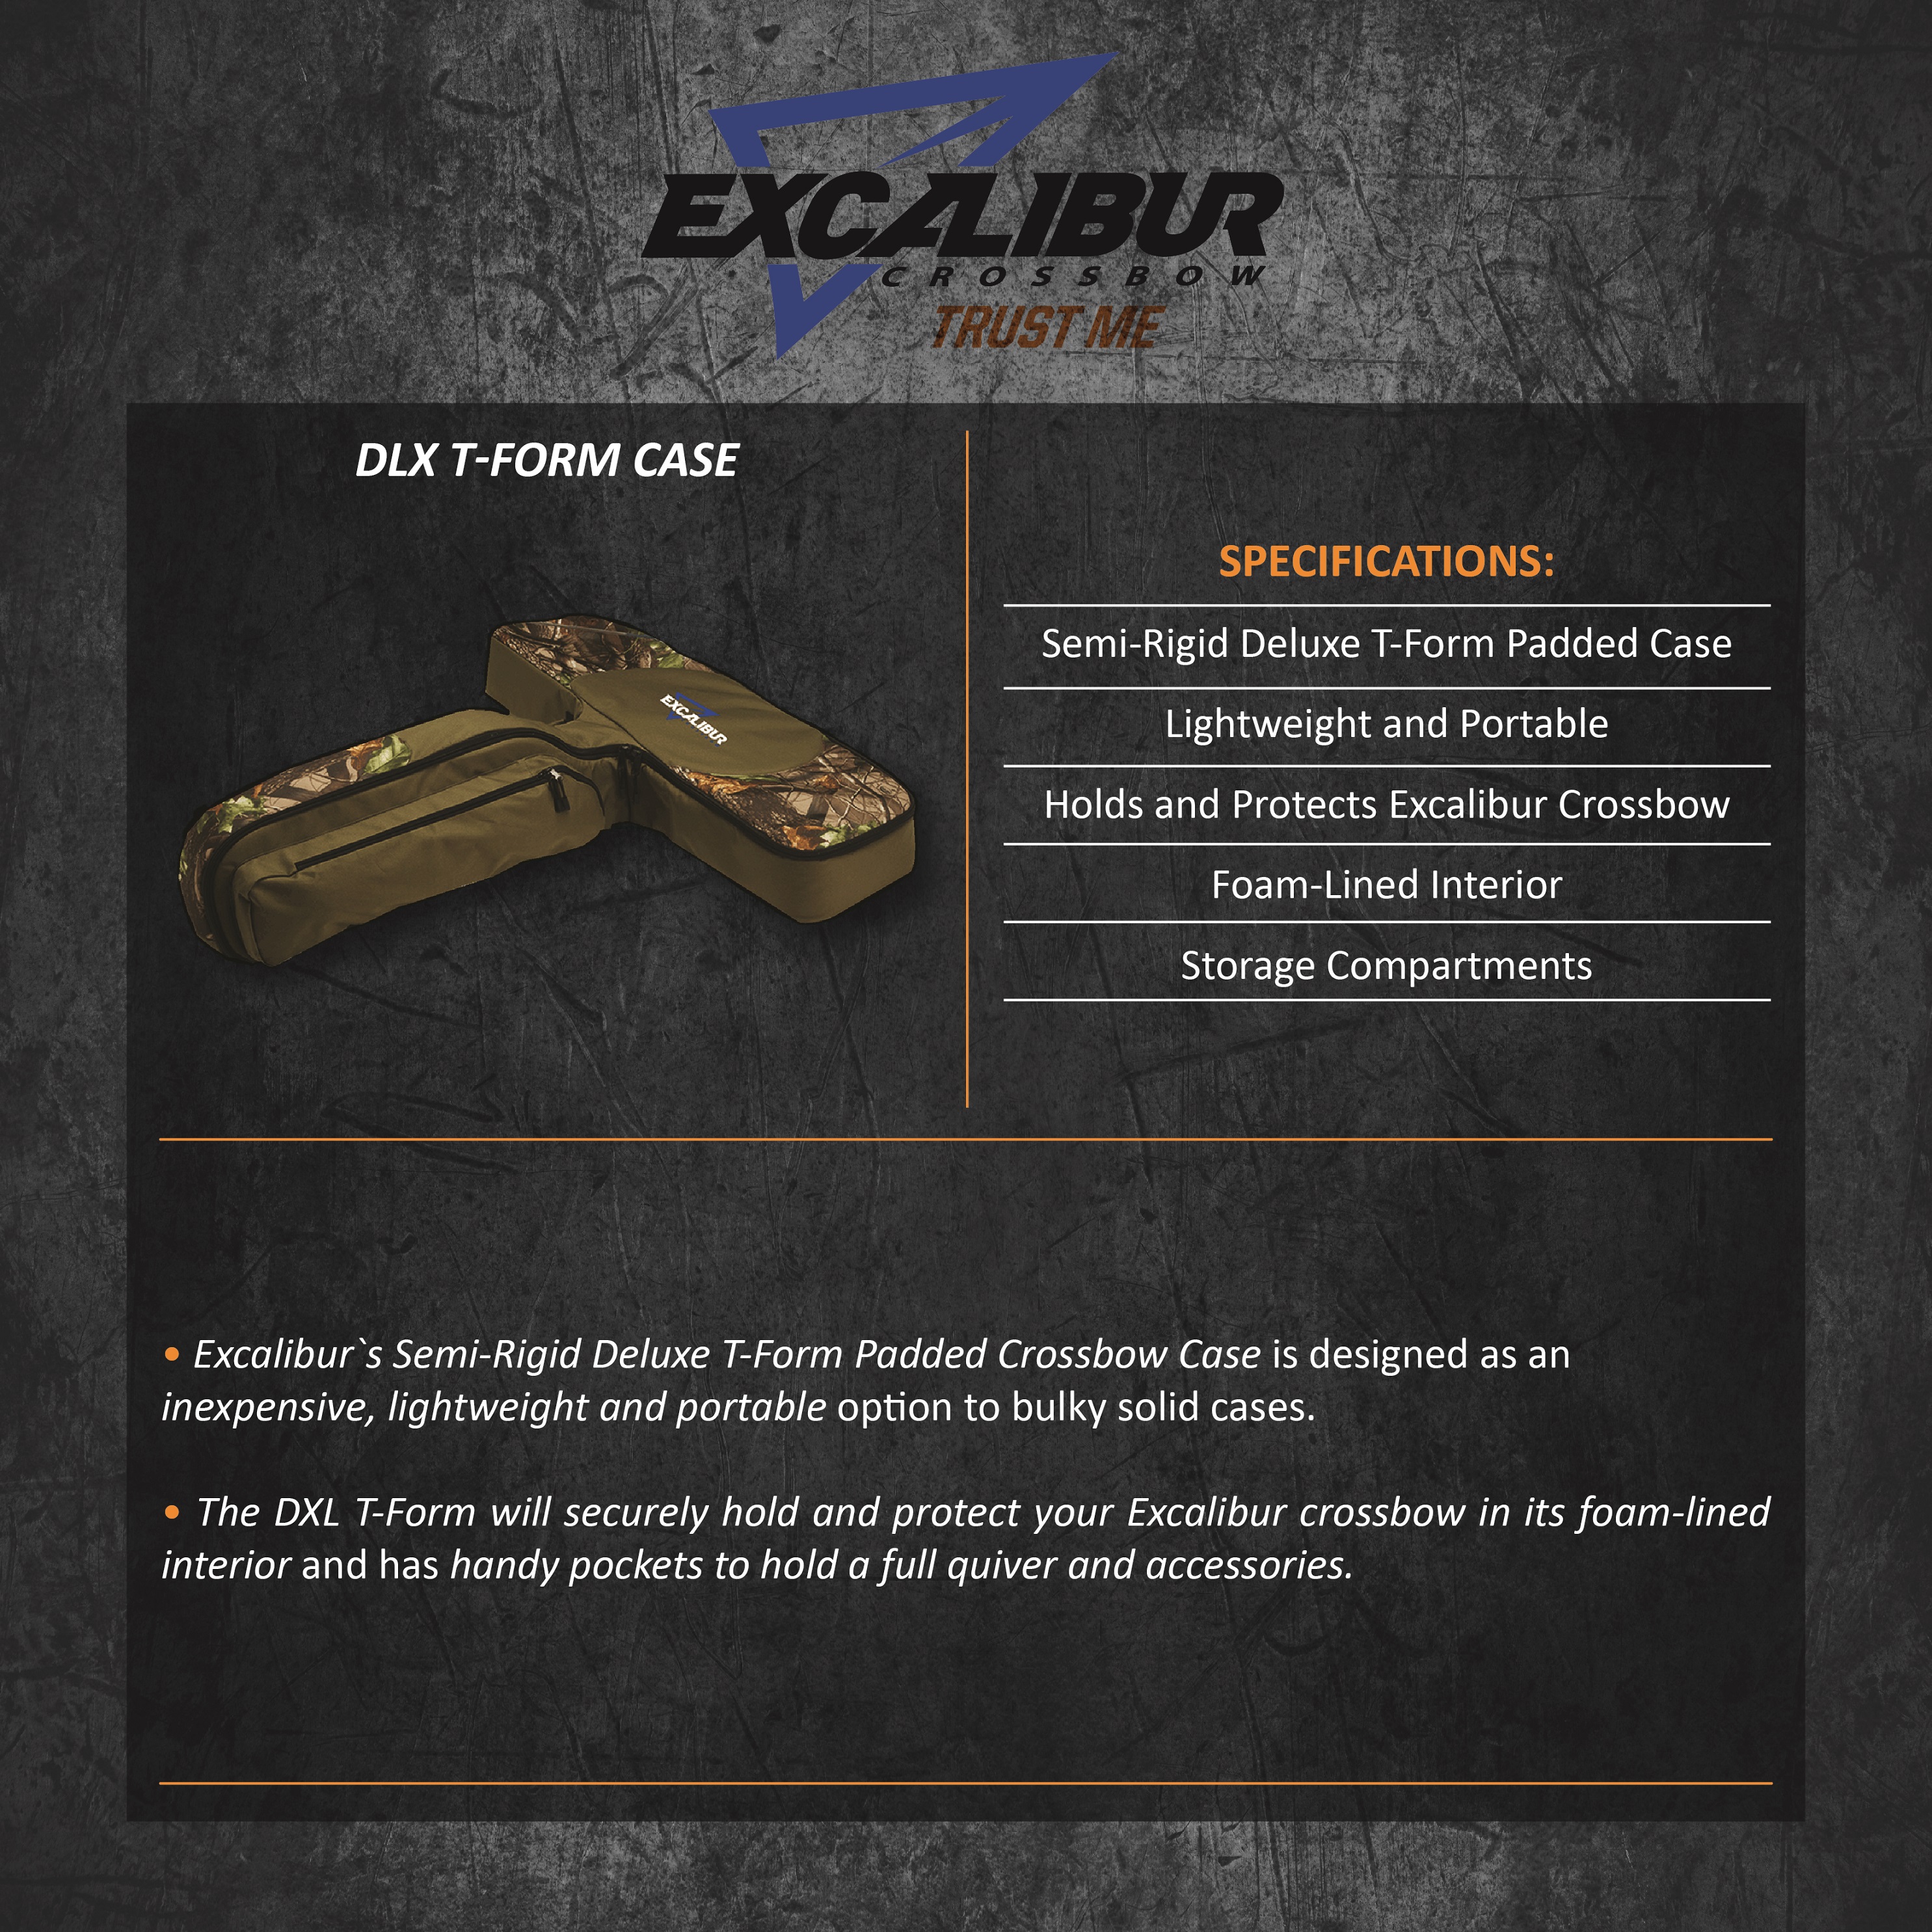 Excalibur_DLX_T_Form_Case_Product_Description